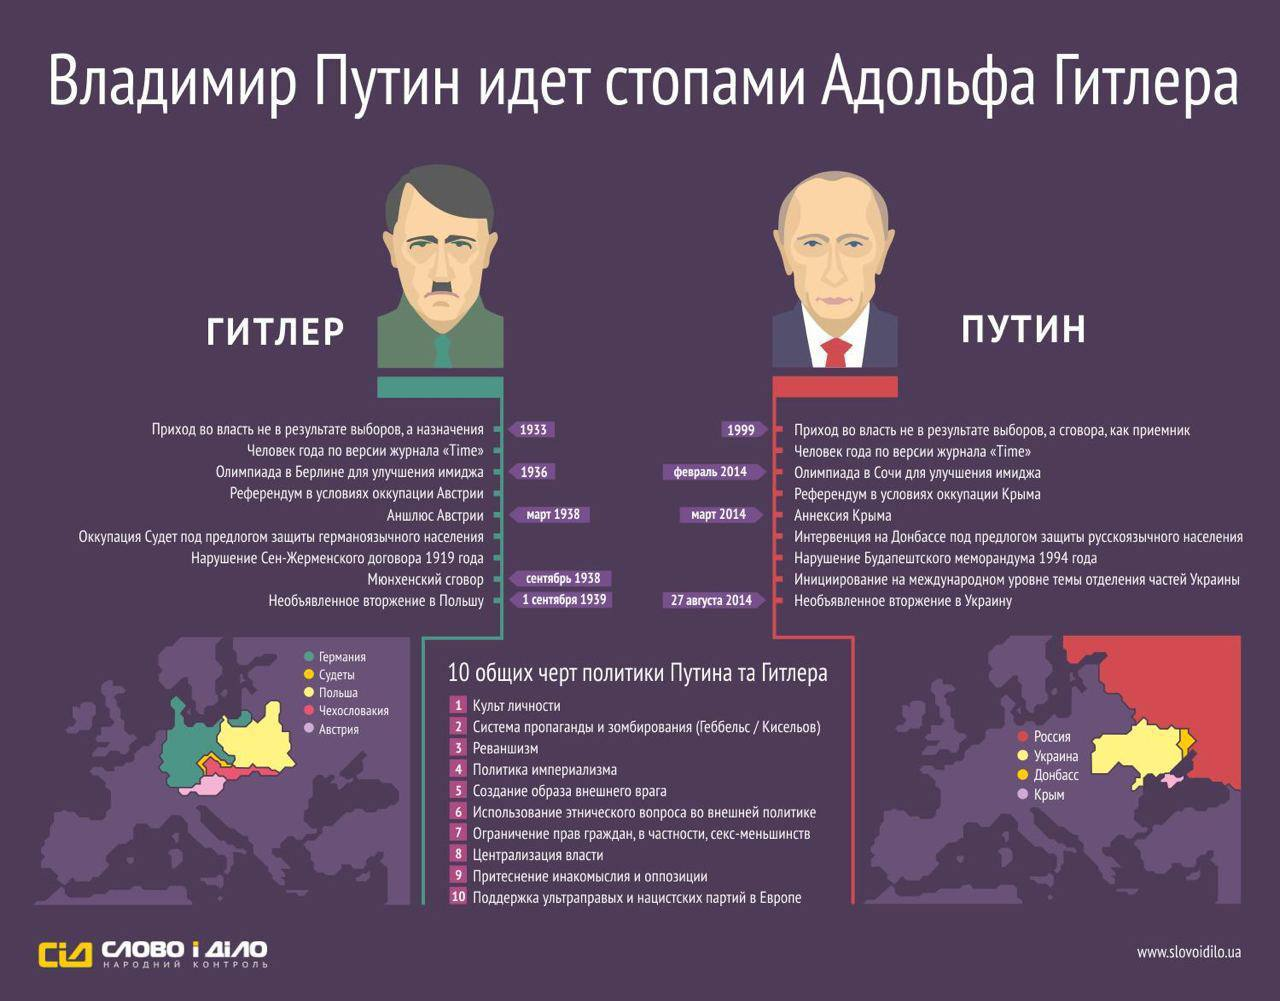 Схожие черты внешней и внутренней политики Путина и Гитлера